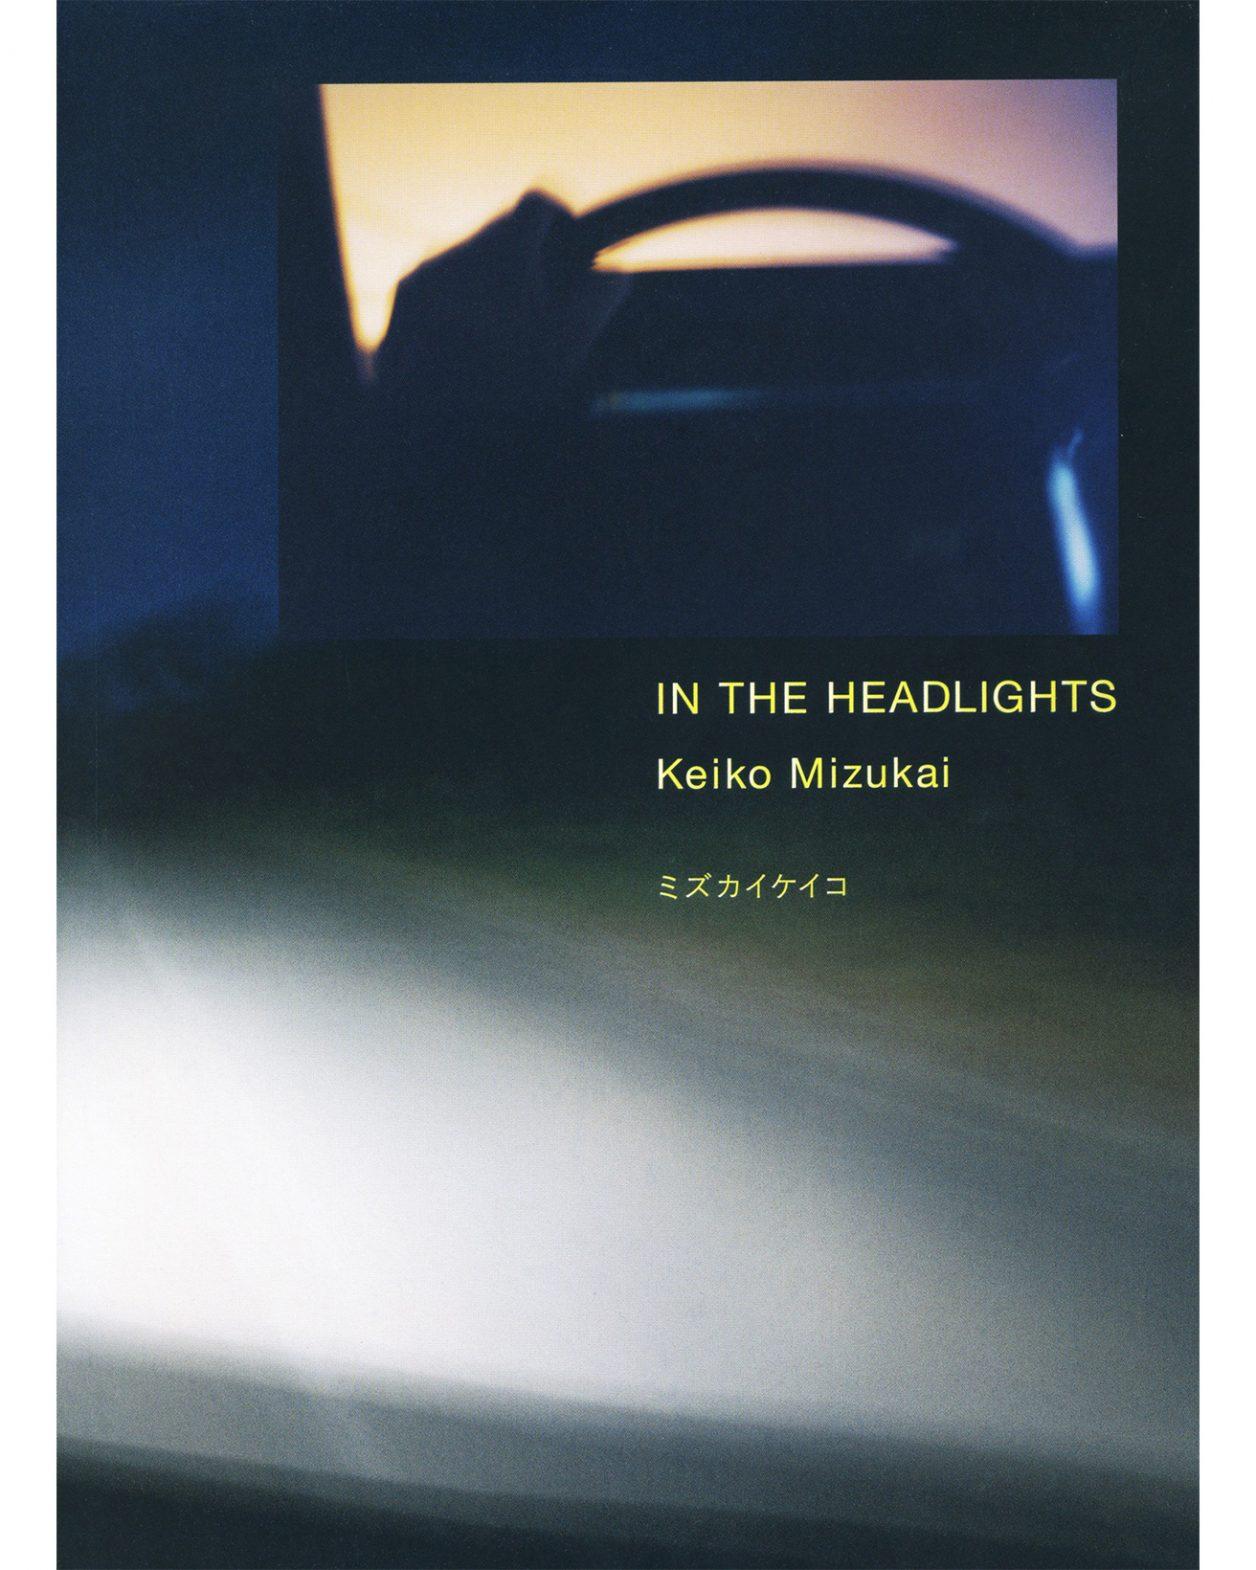 ボルボで旅した22年間が詰まった写真集、ミズカイケイコ『IN THE HEADLIGHTS』。